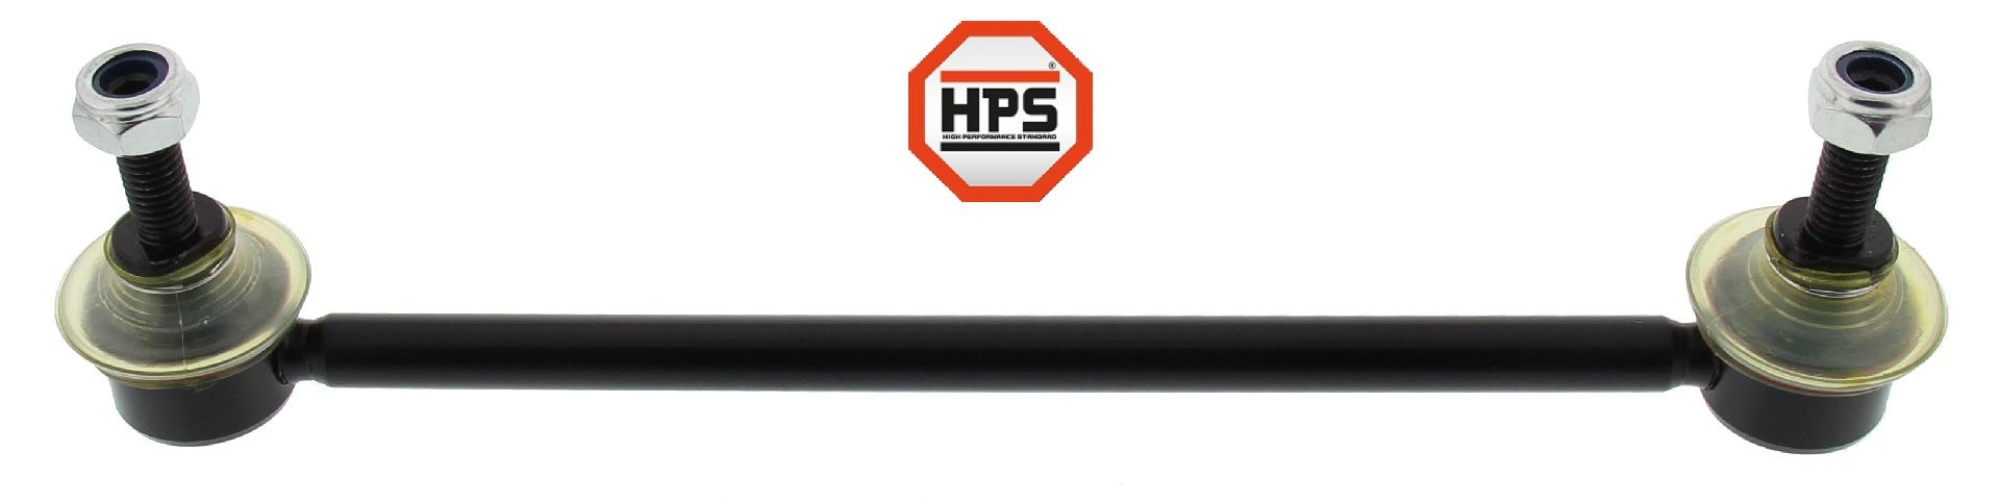 HPS-Koppelstange, verstärkt, HA, FORD MONDEO III, MONDEO III